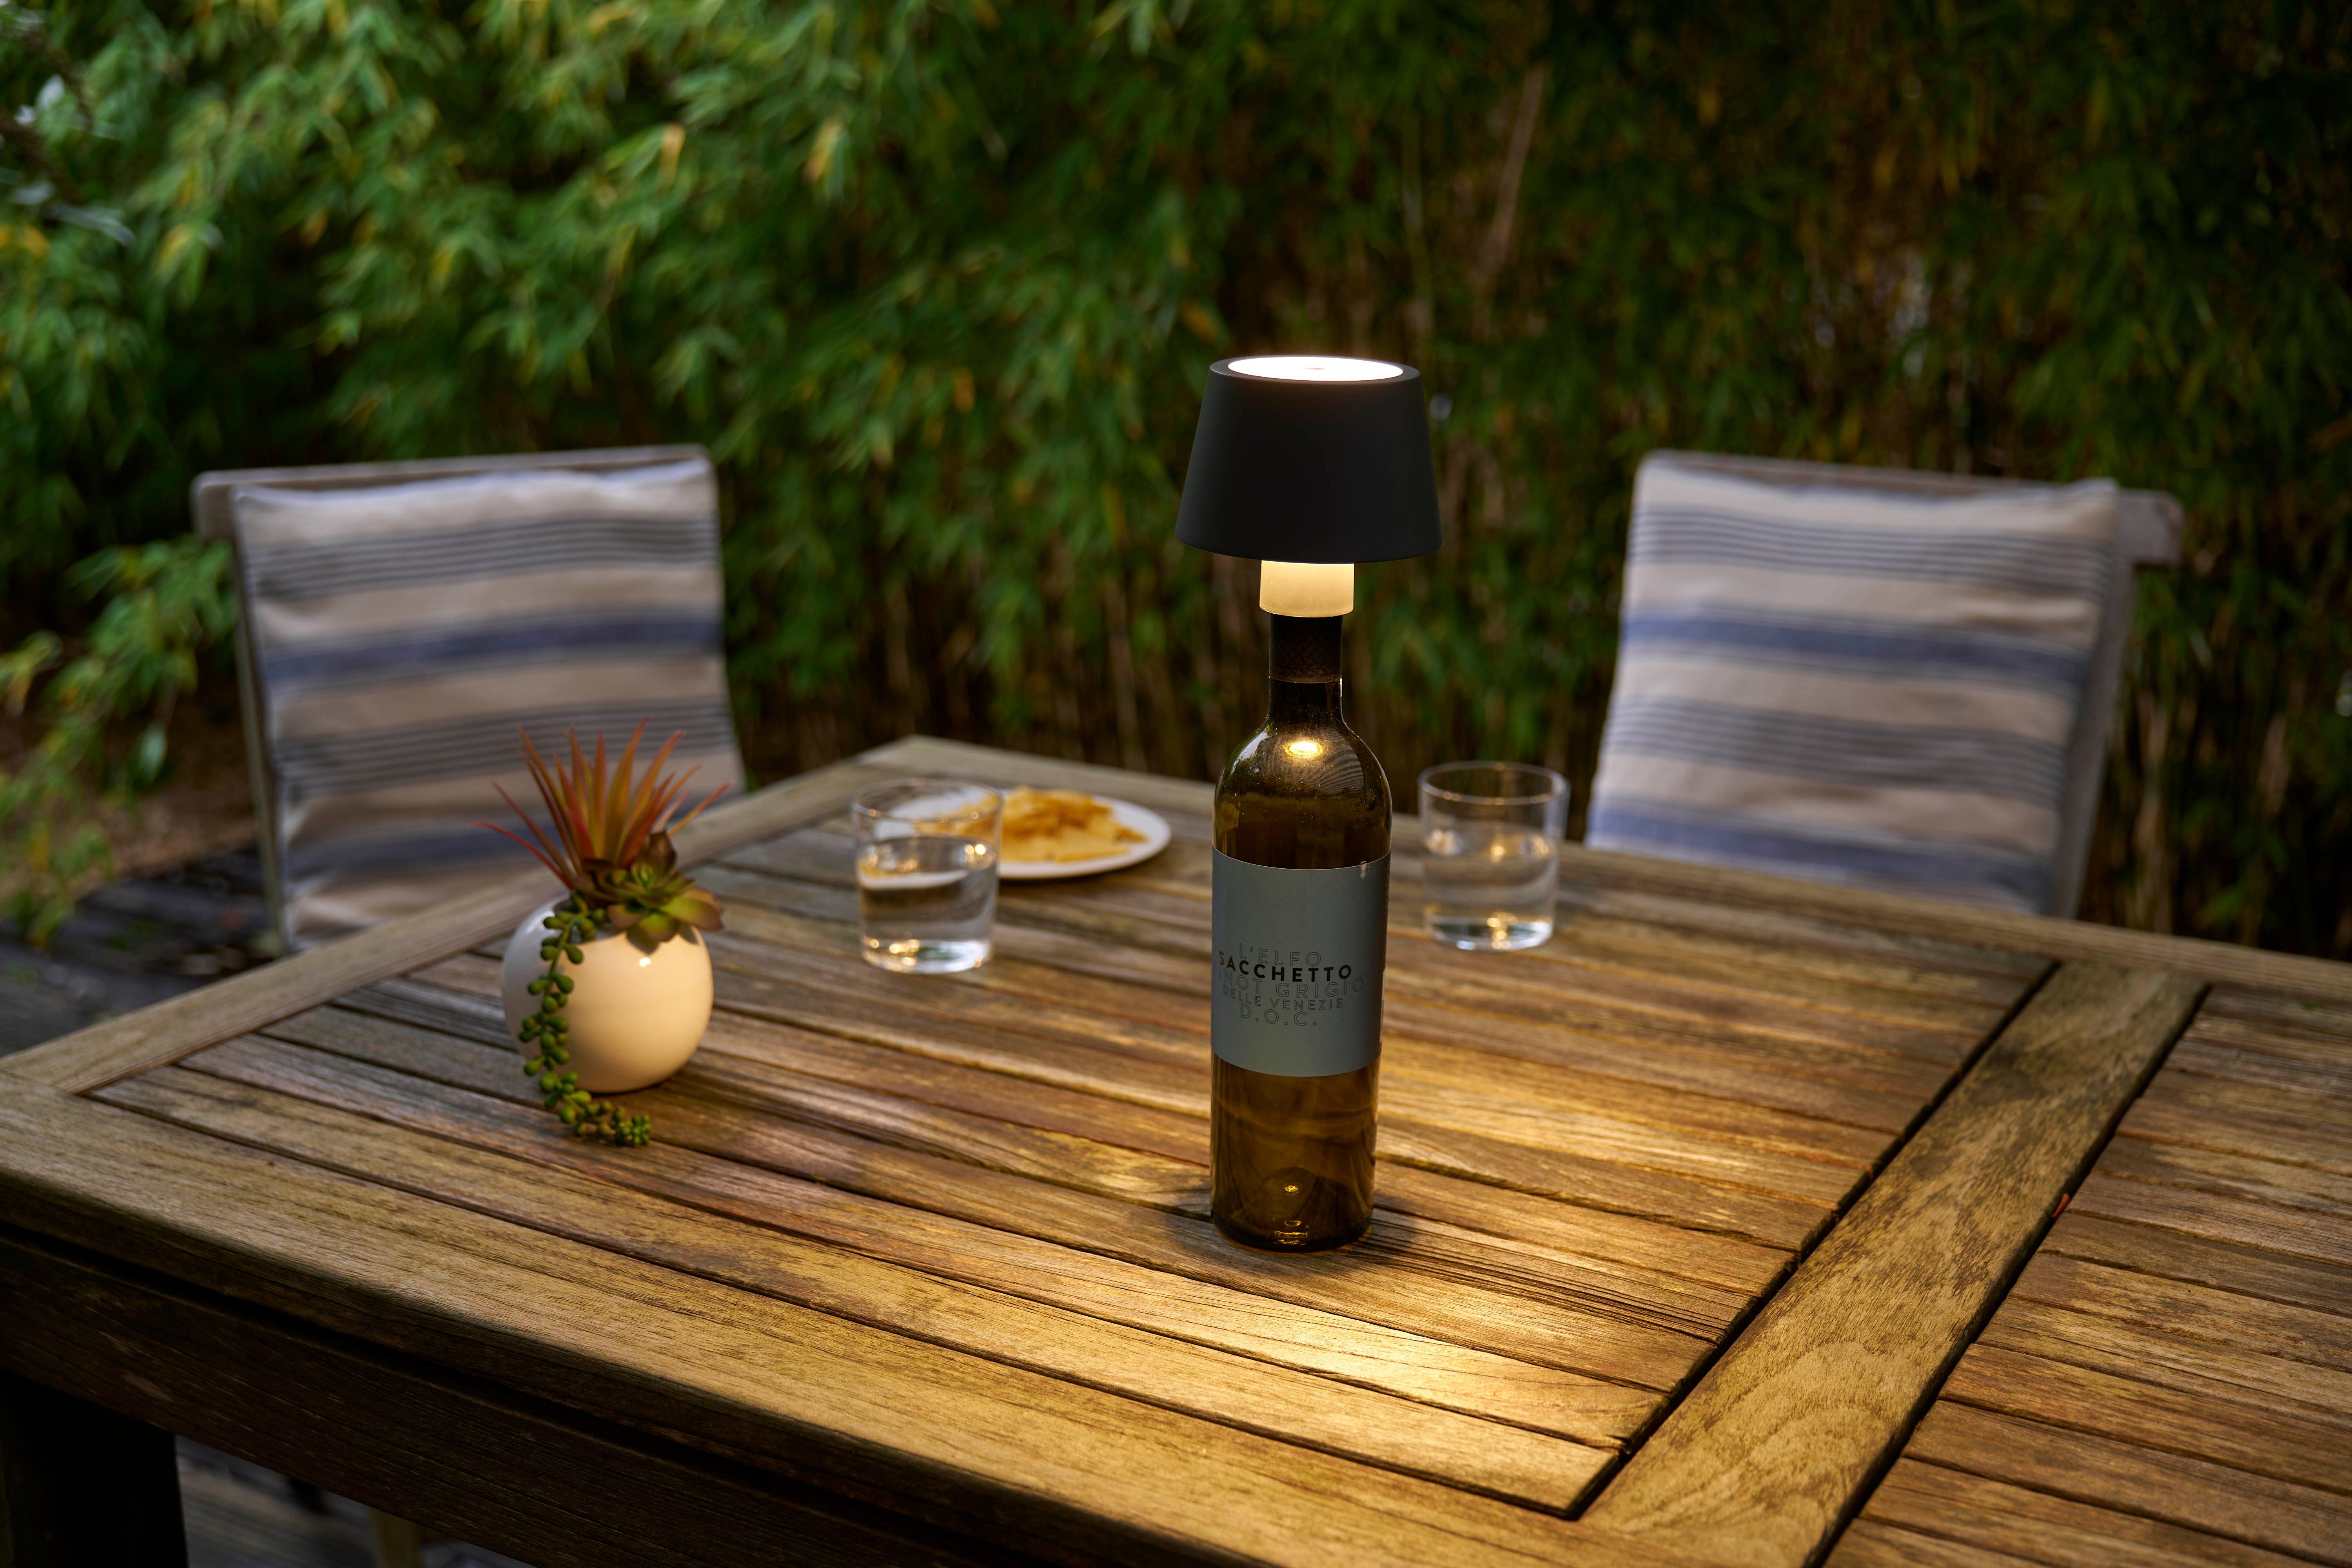 Northpoint Tischleuchte Dimmbar LED & Flaschenlampe Touchsensor Tischleuchte Akku mit olivegrün Akku